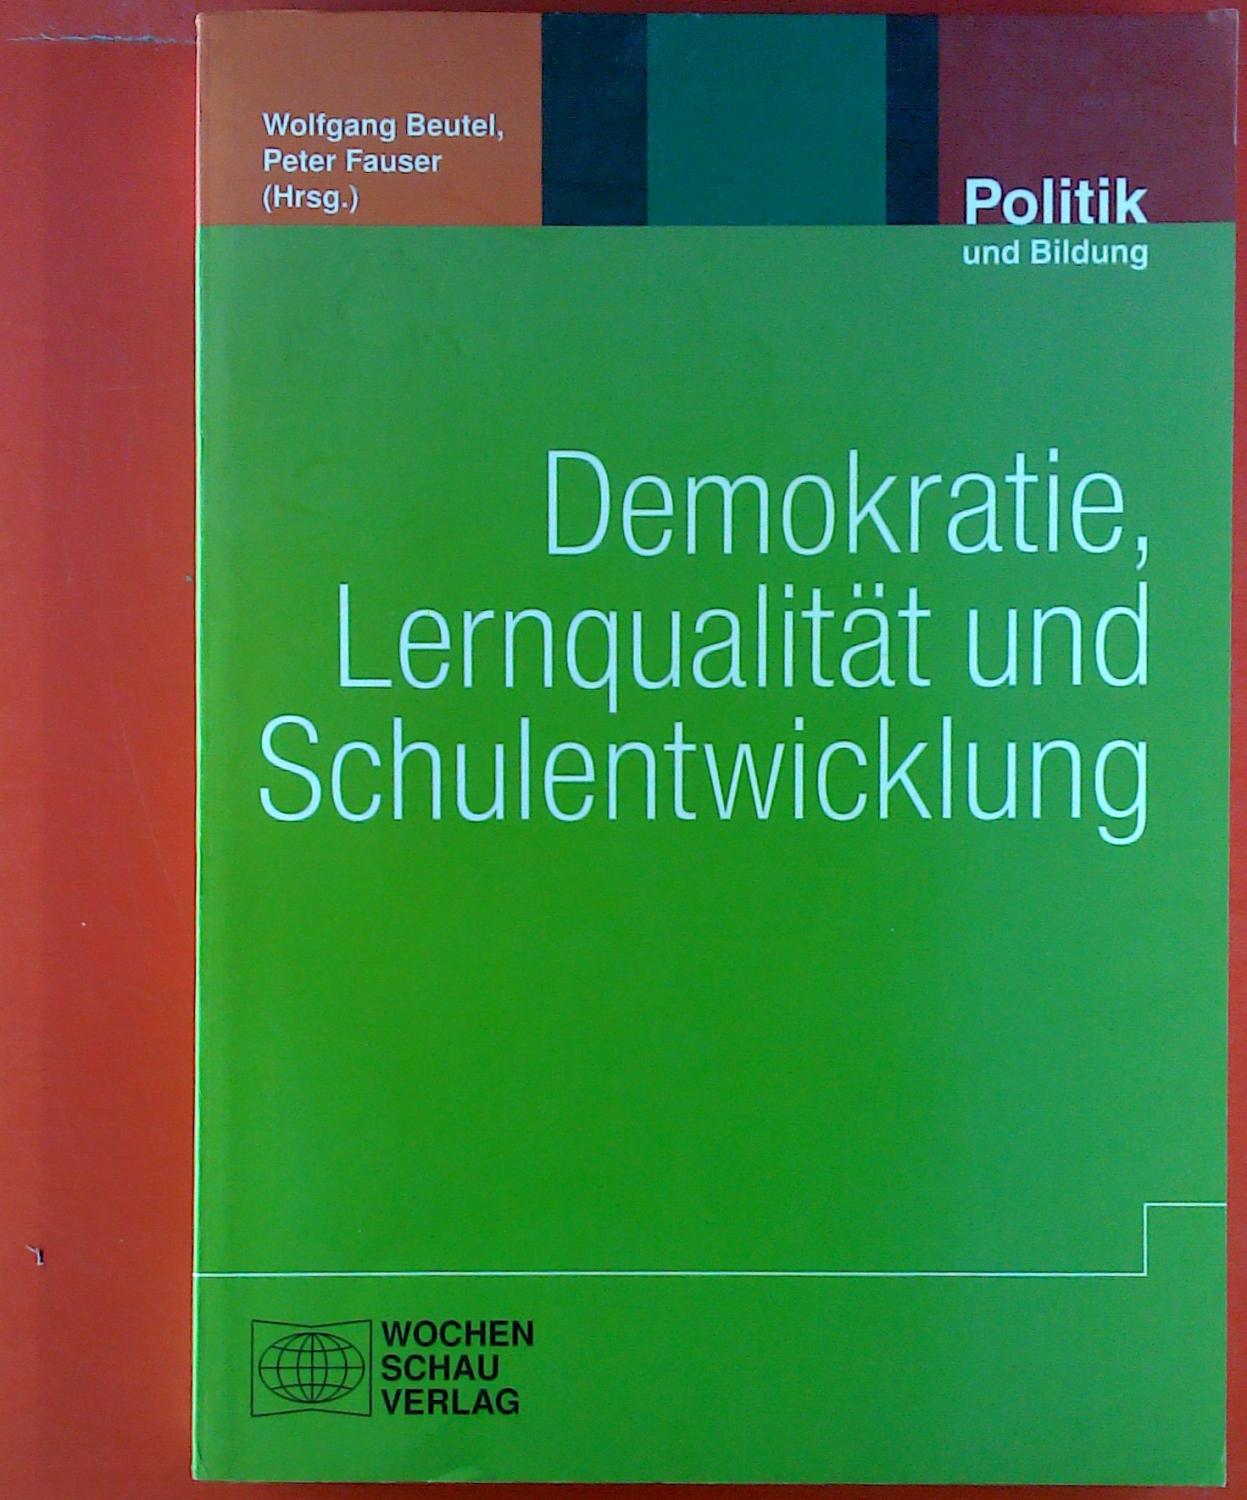 Politik und Bildung, Band 52. Demokratie, Lernqualität und Schulentwicklung. - Wolfgang Beutel, Peter Fauser